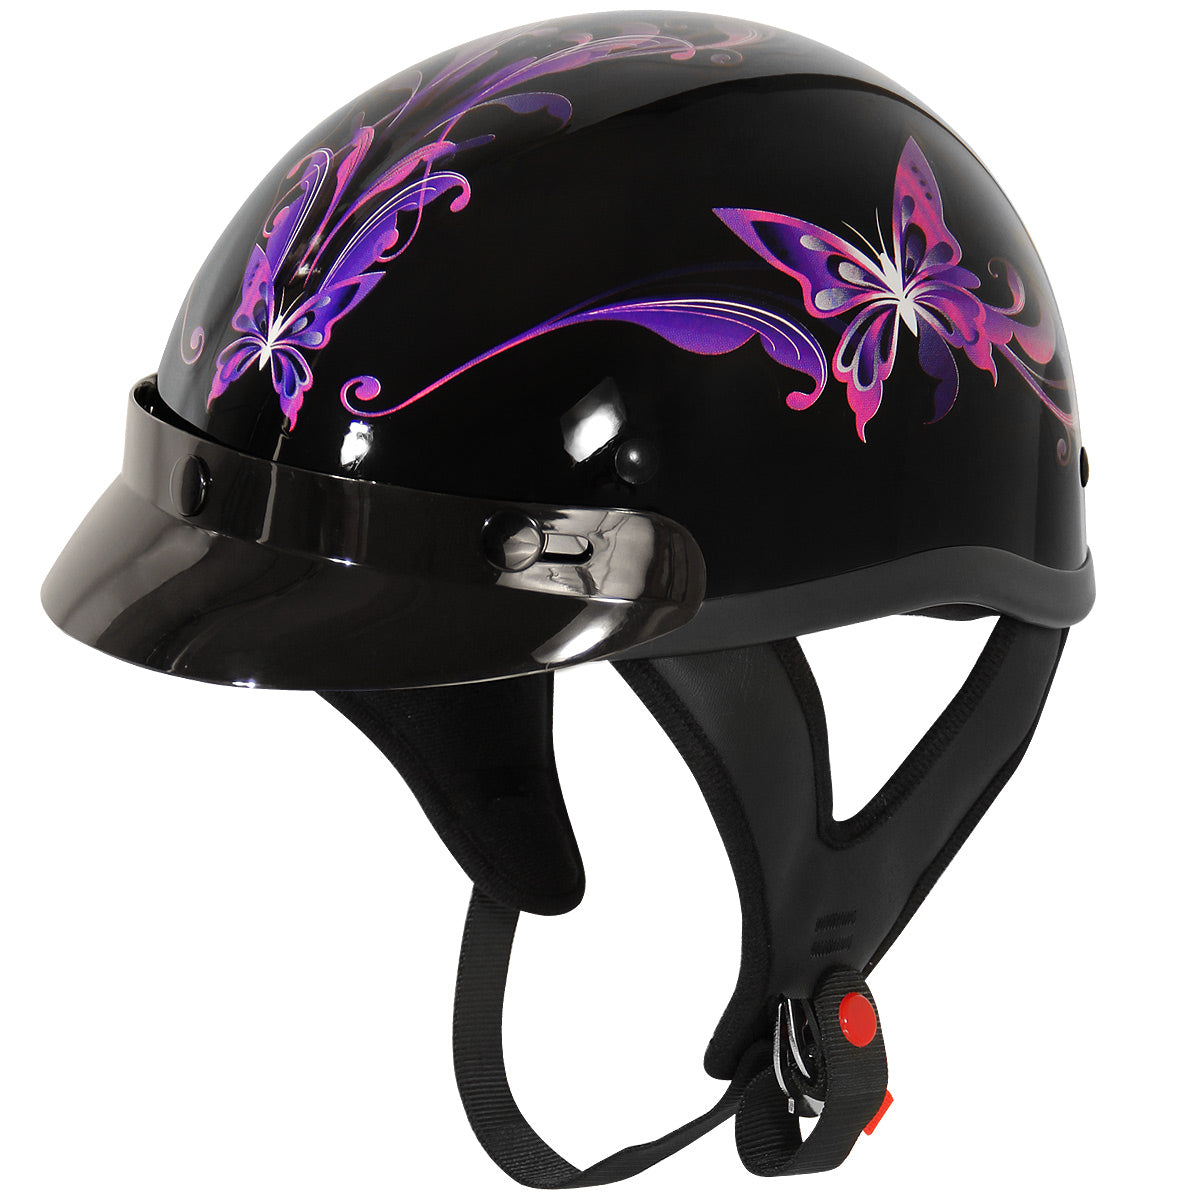 Best Womens Motorcycle Helmets - webBikeWorld  Womens motorcycle helmets, Motorcycle  women, Motorcycle helmets